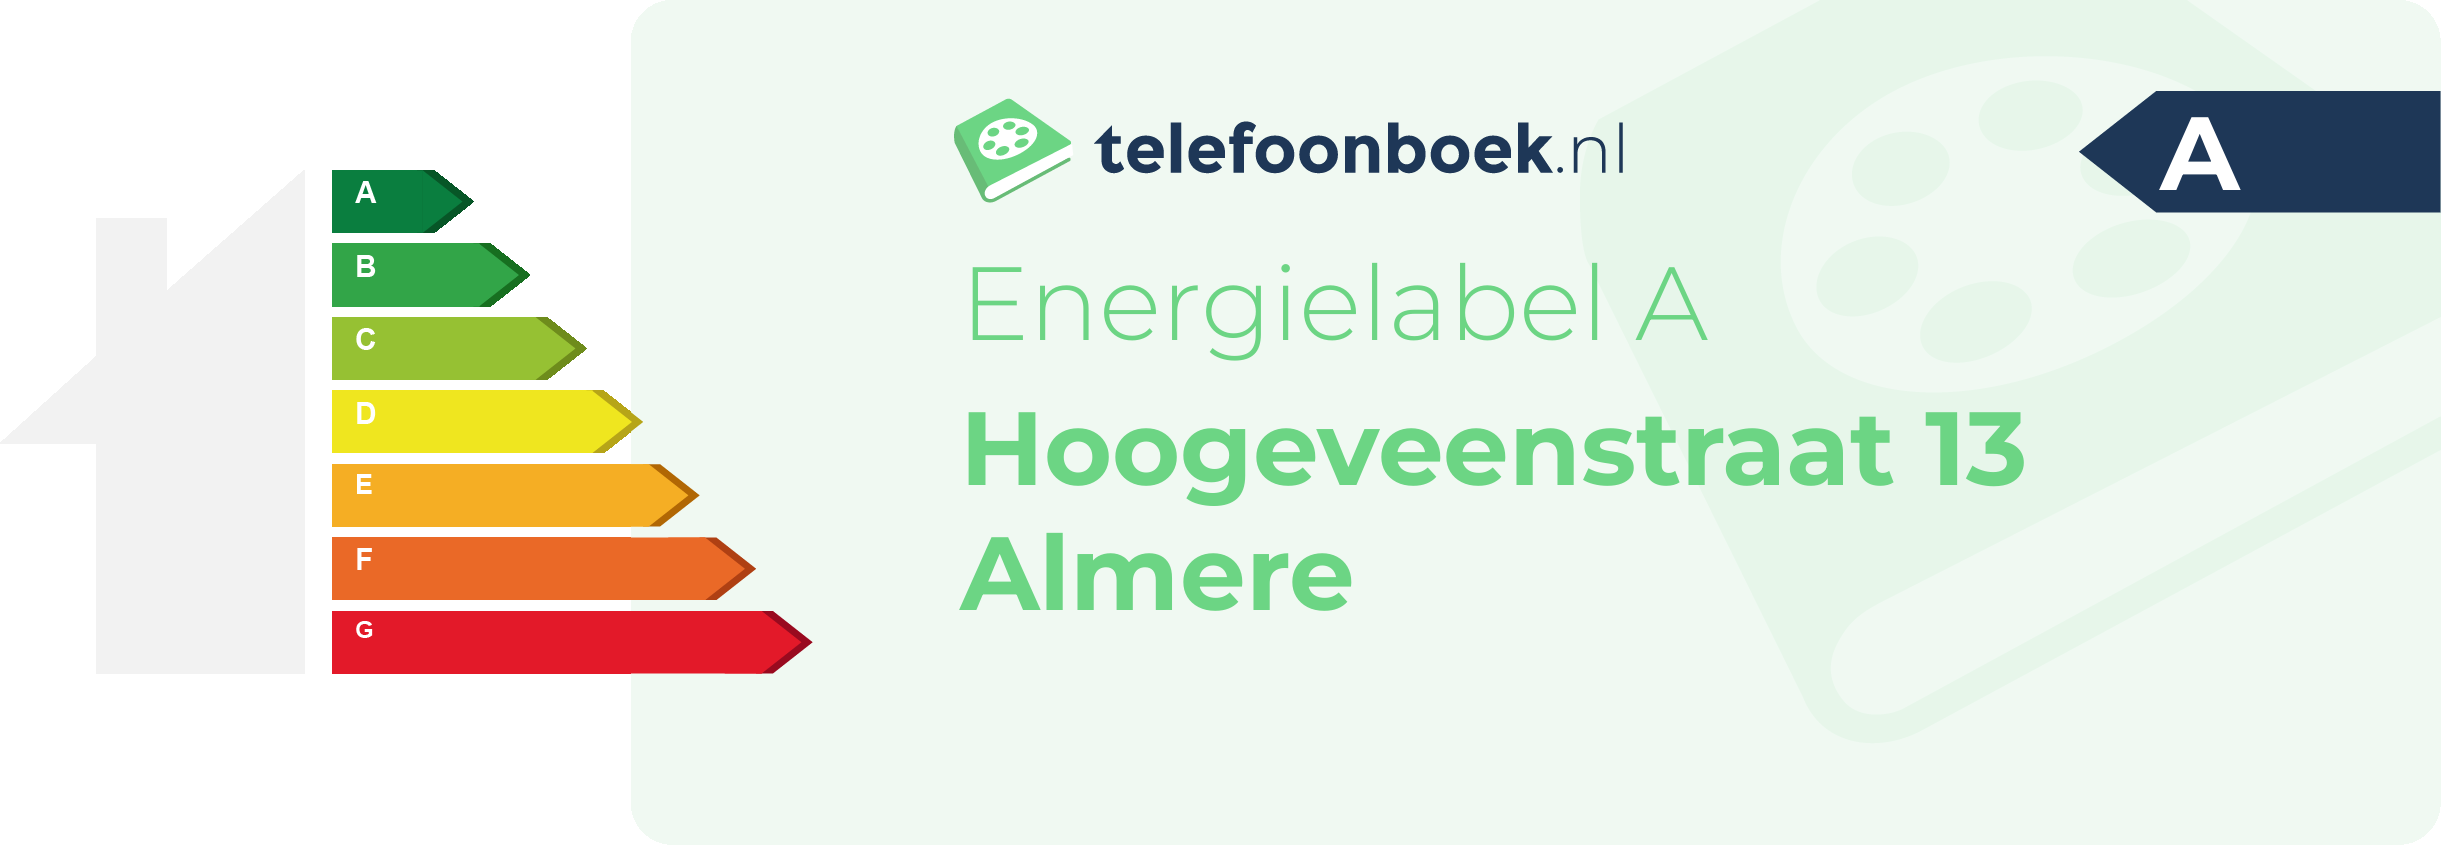 Energielabel Hoogeveenstraat 13 Almere